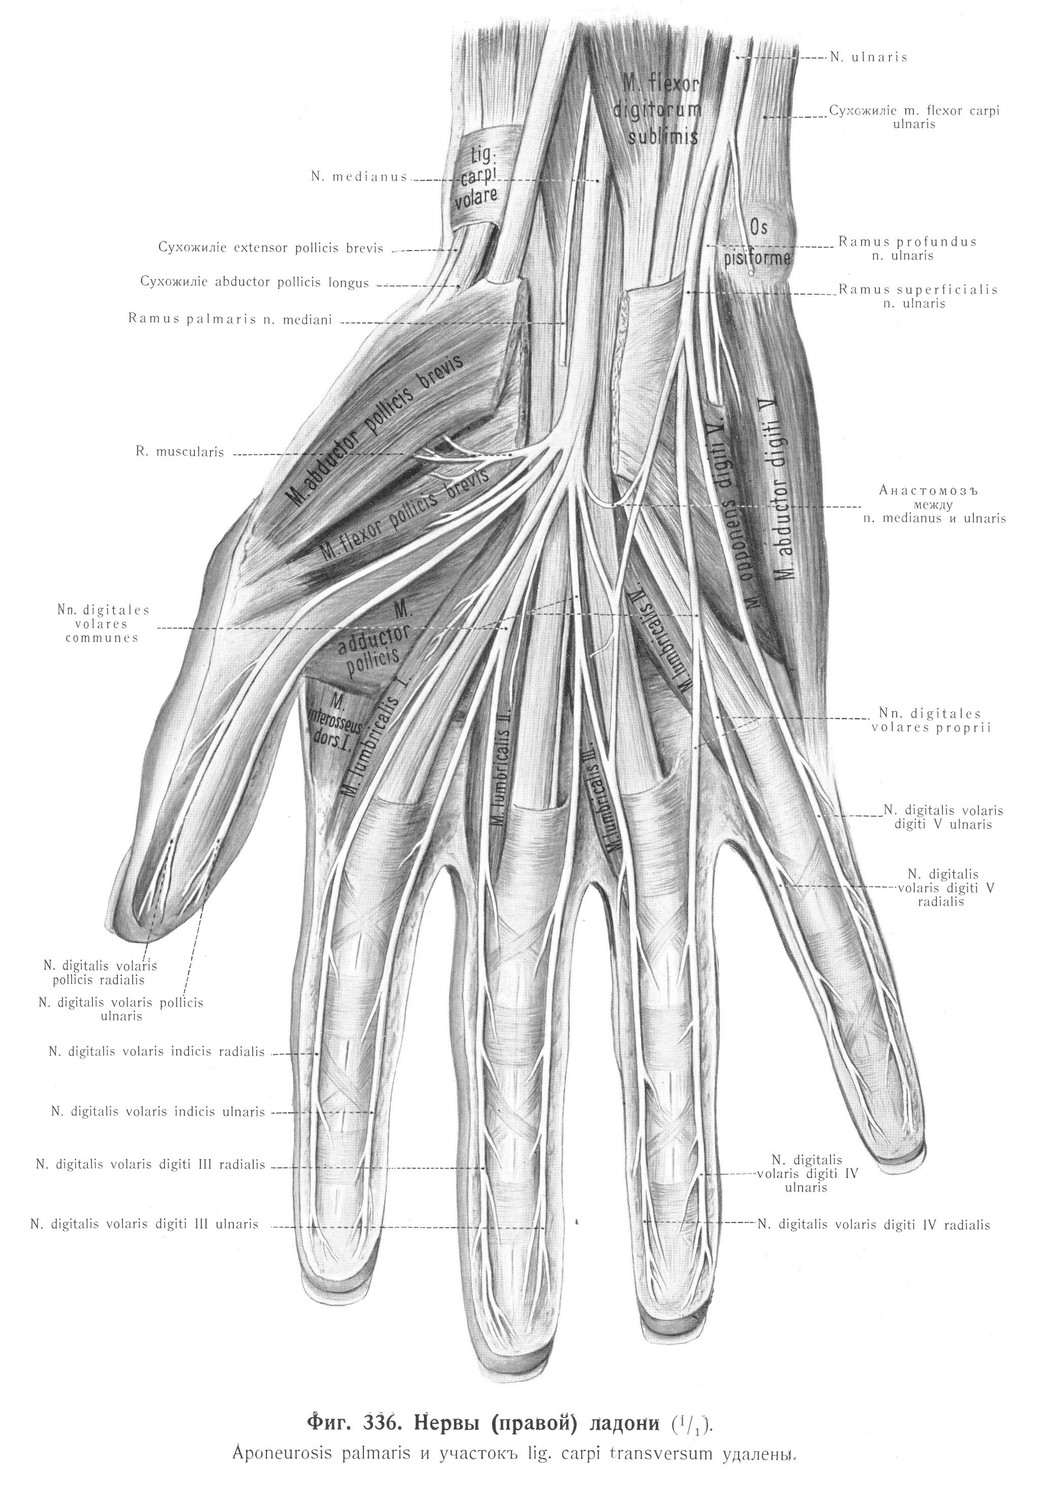 Вопросъ о дорзальныхъ нервахъ пальцевъ